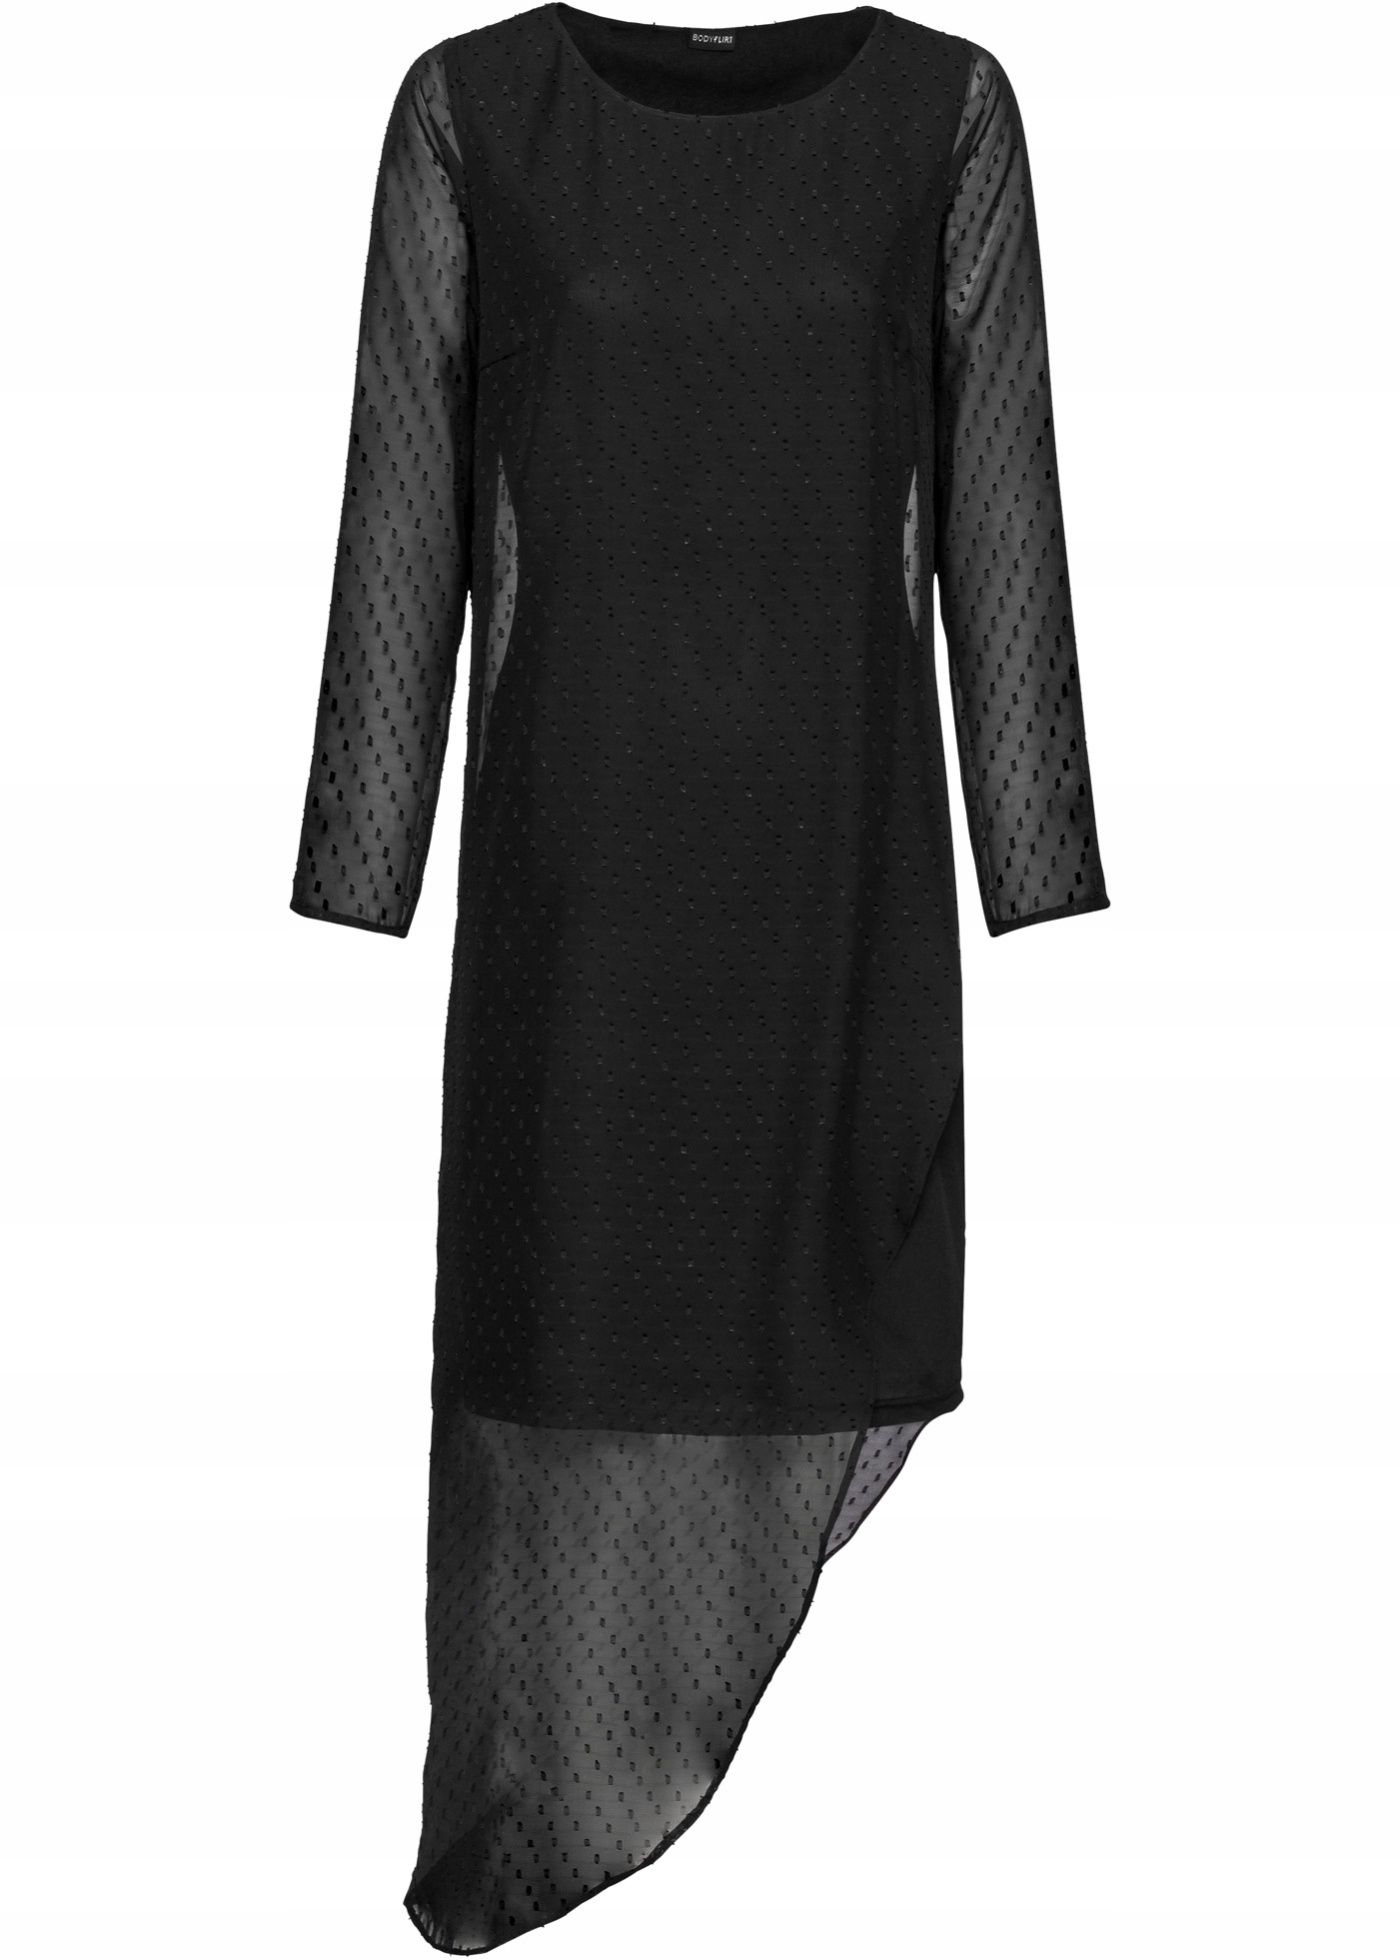 B.P.C Sukienka asymetryczna szyfonowa czarna *38